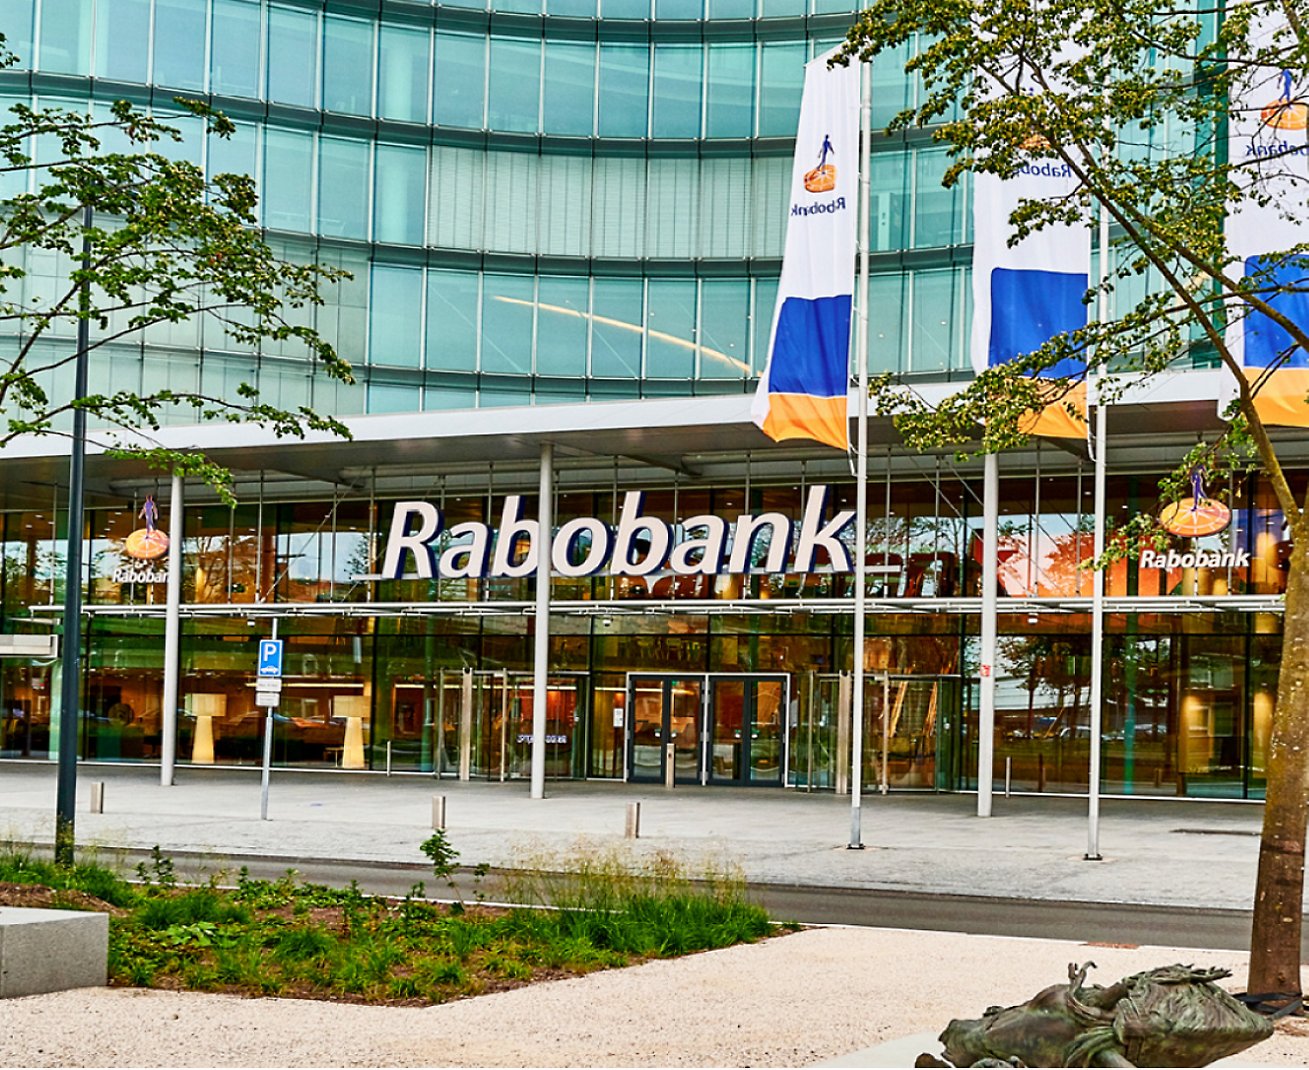 อาคารที่มีสัญลักษณ์ Rabobank